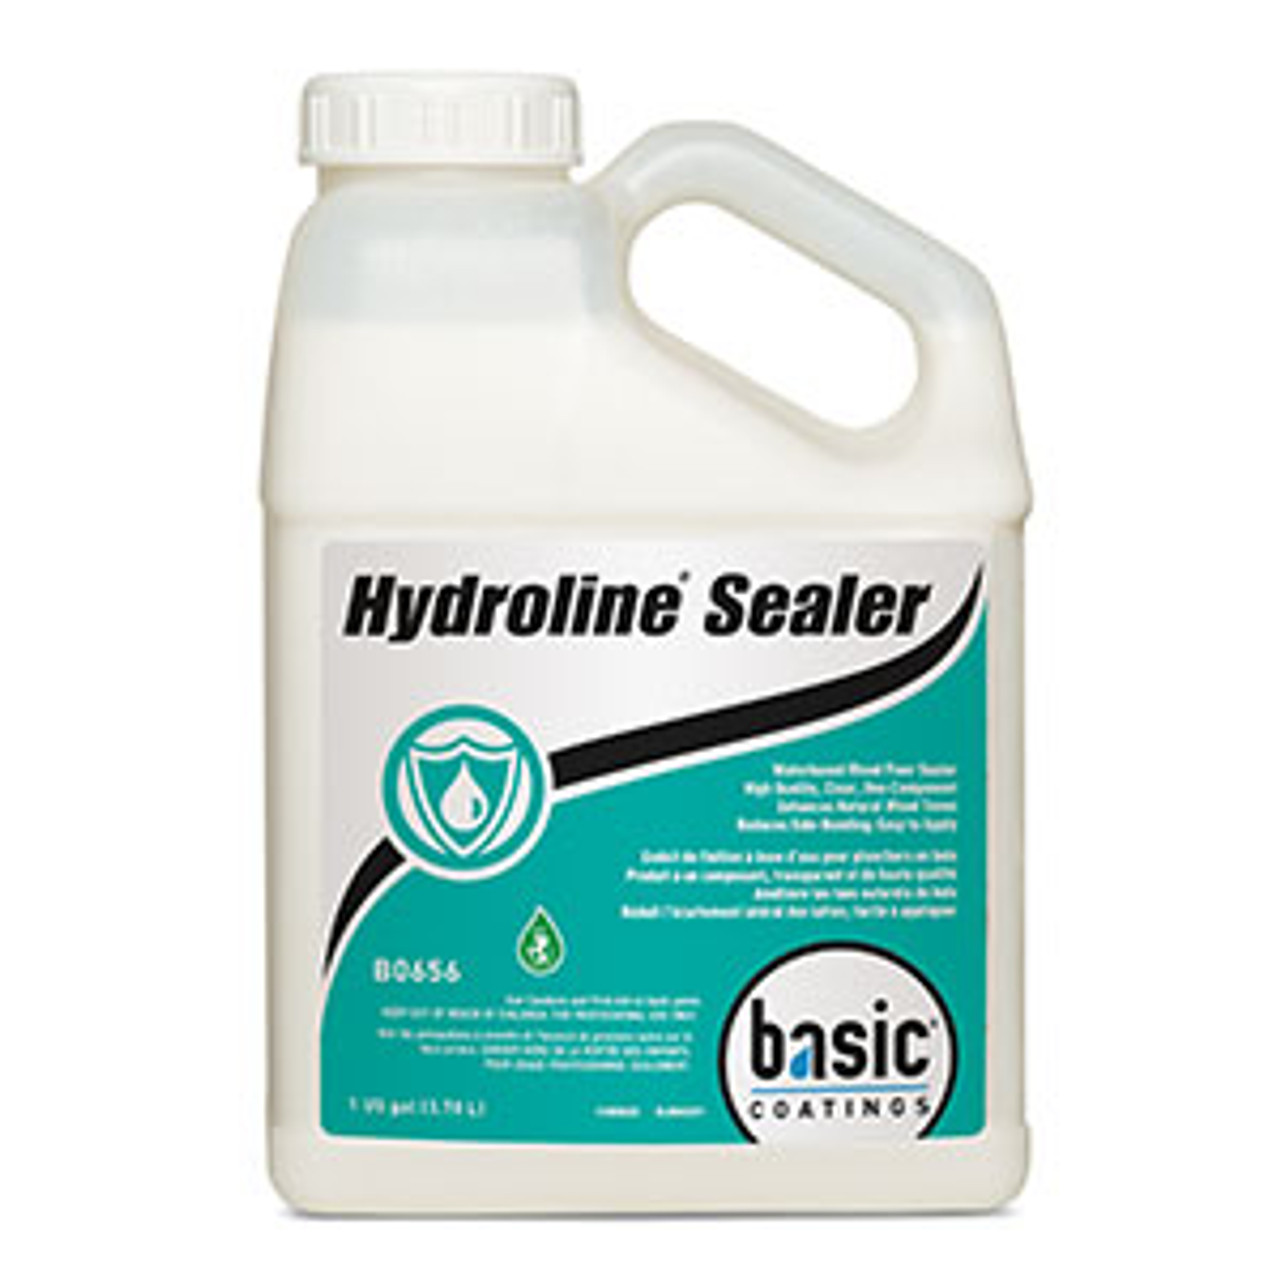 Basic Coatings Hydroline Sealer